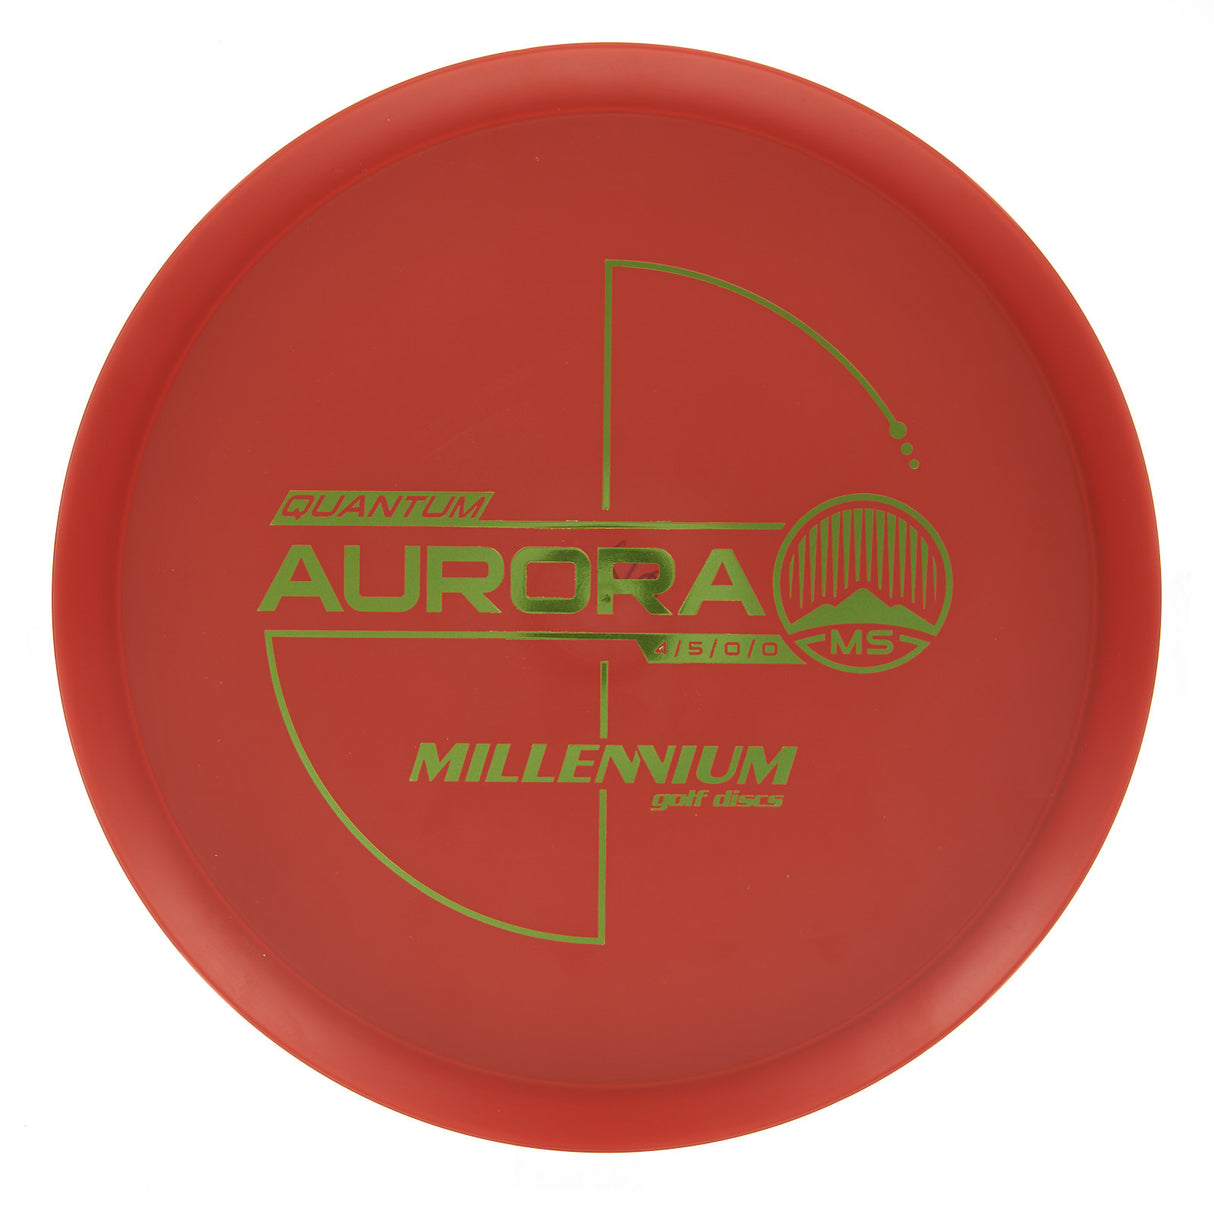 Millennium Aurora MS - Quantum 177g | Style 0003